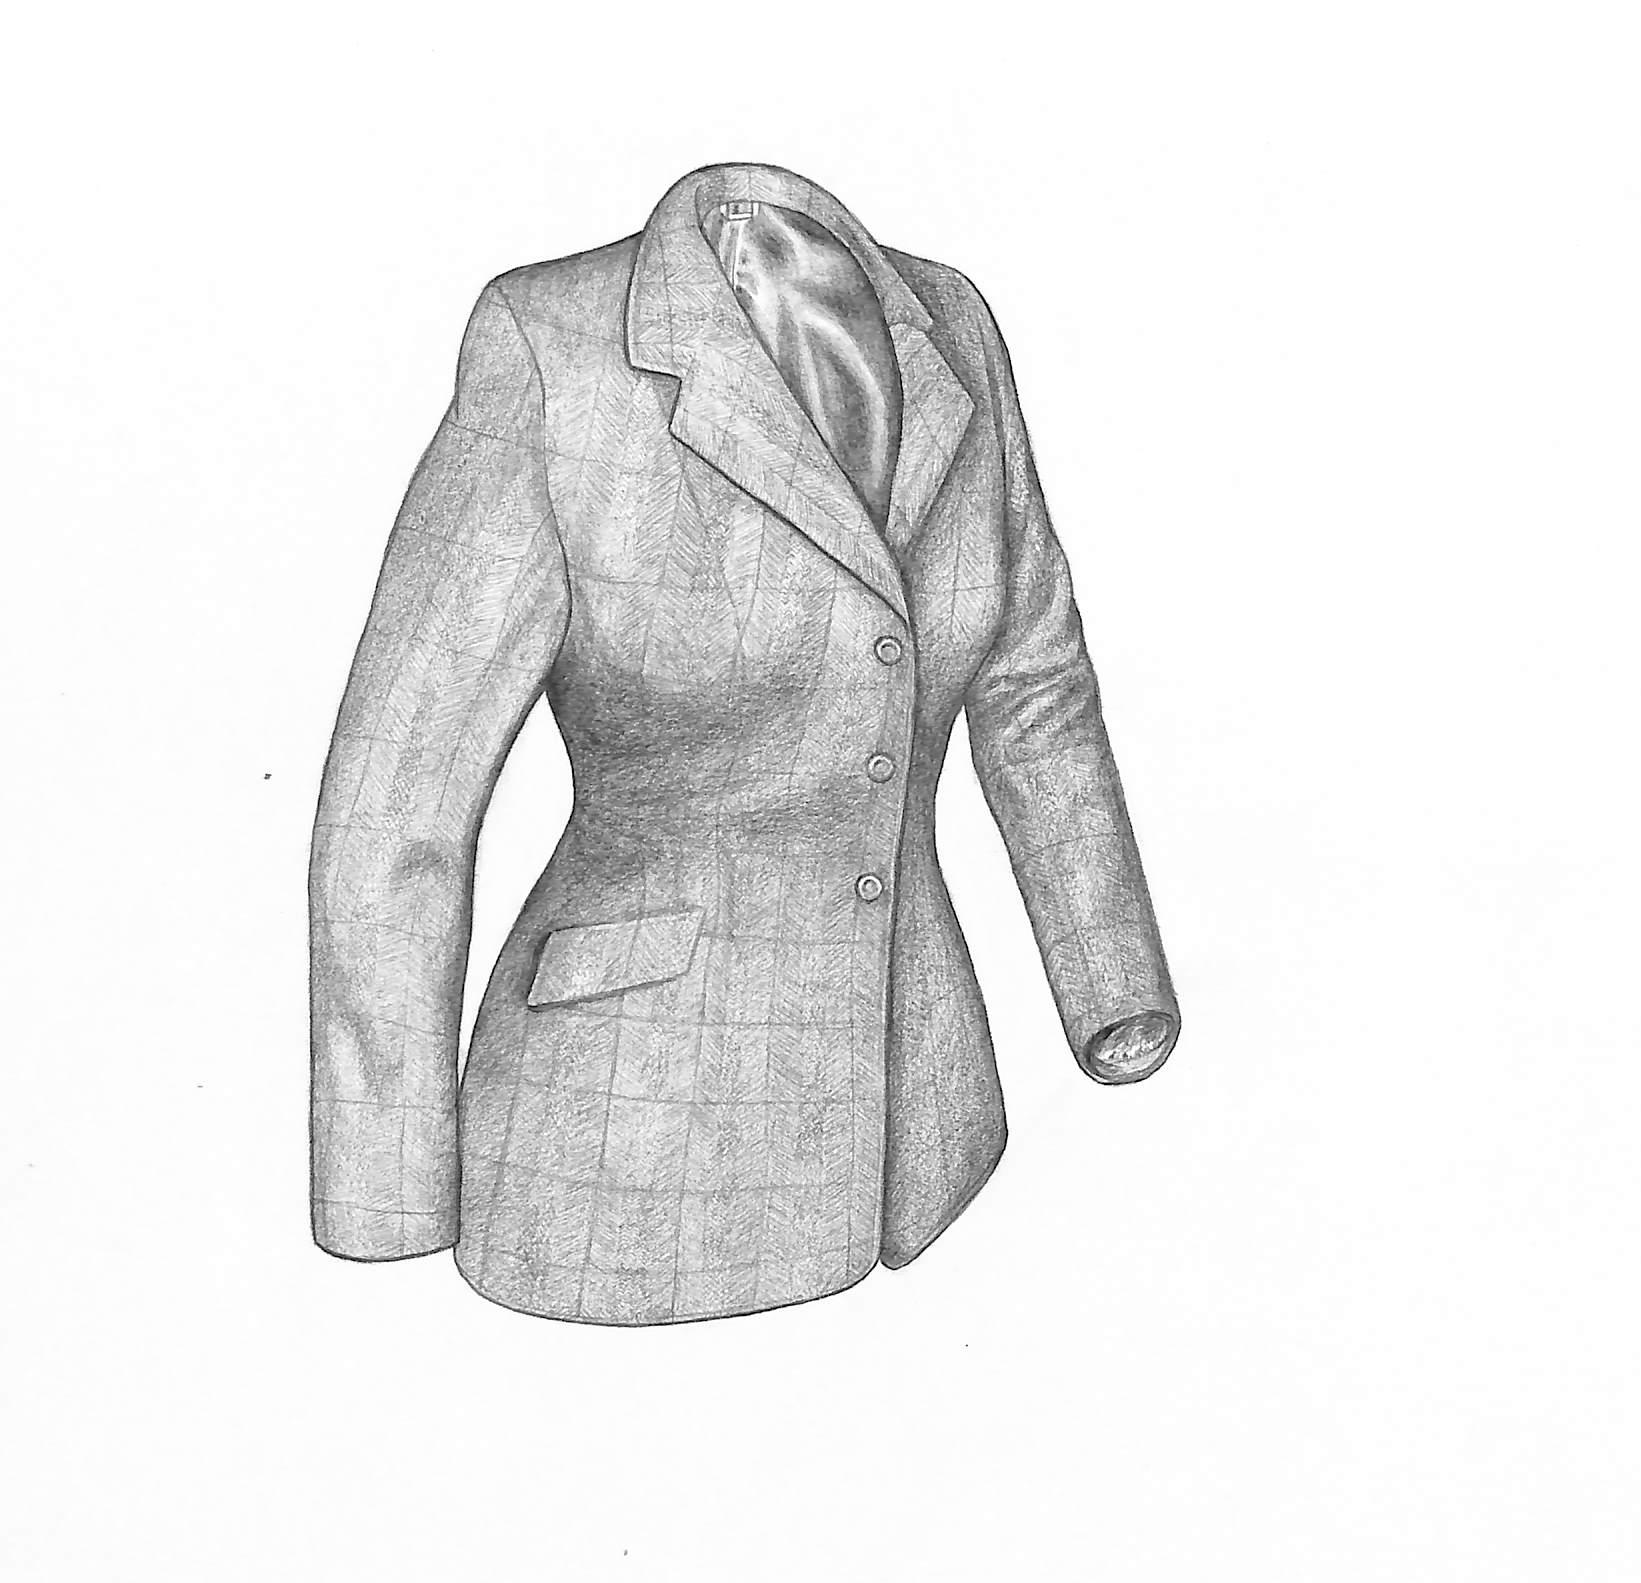 Ladies Tweed Jacket Graphite Drawing - Art by Unknown